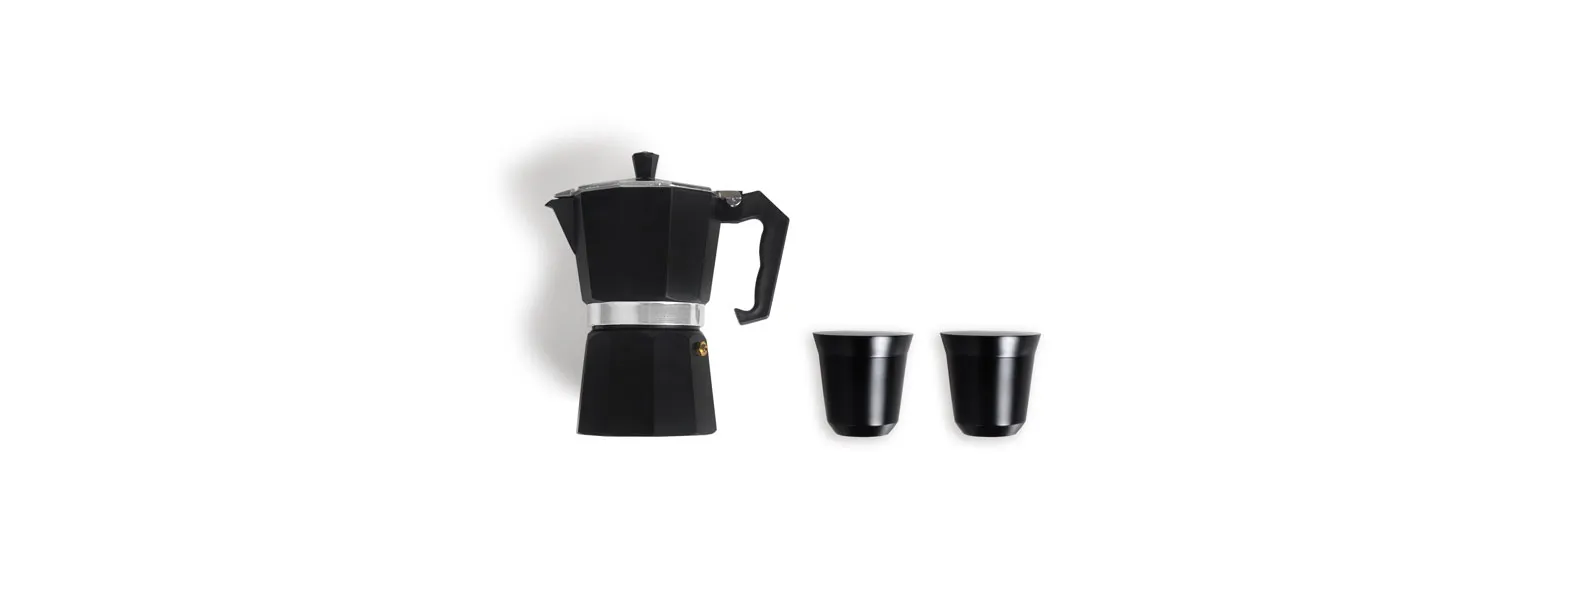 Kit para café. Composto por cafeteira modelo Italiana em alumínio de alta qualidade/resistência e dois copos para café em aço inox.